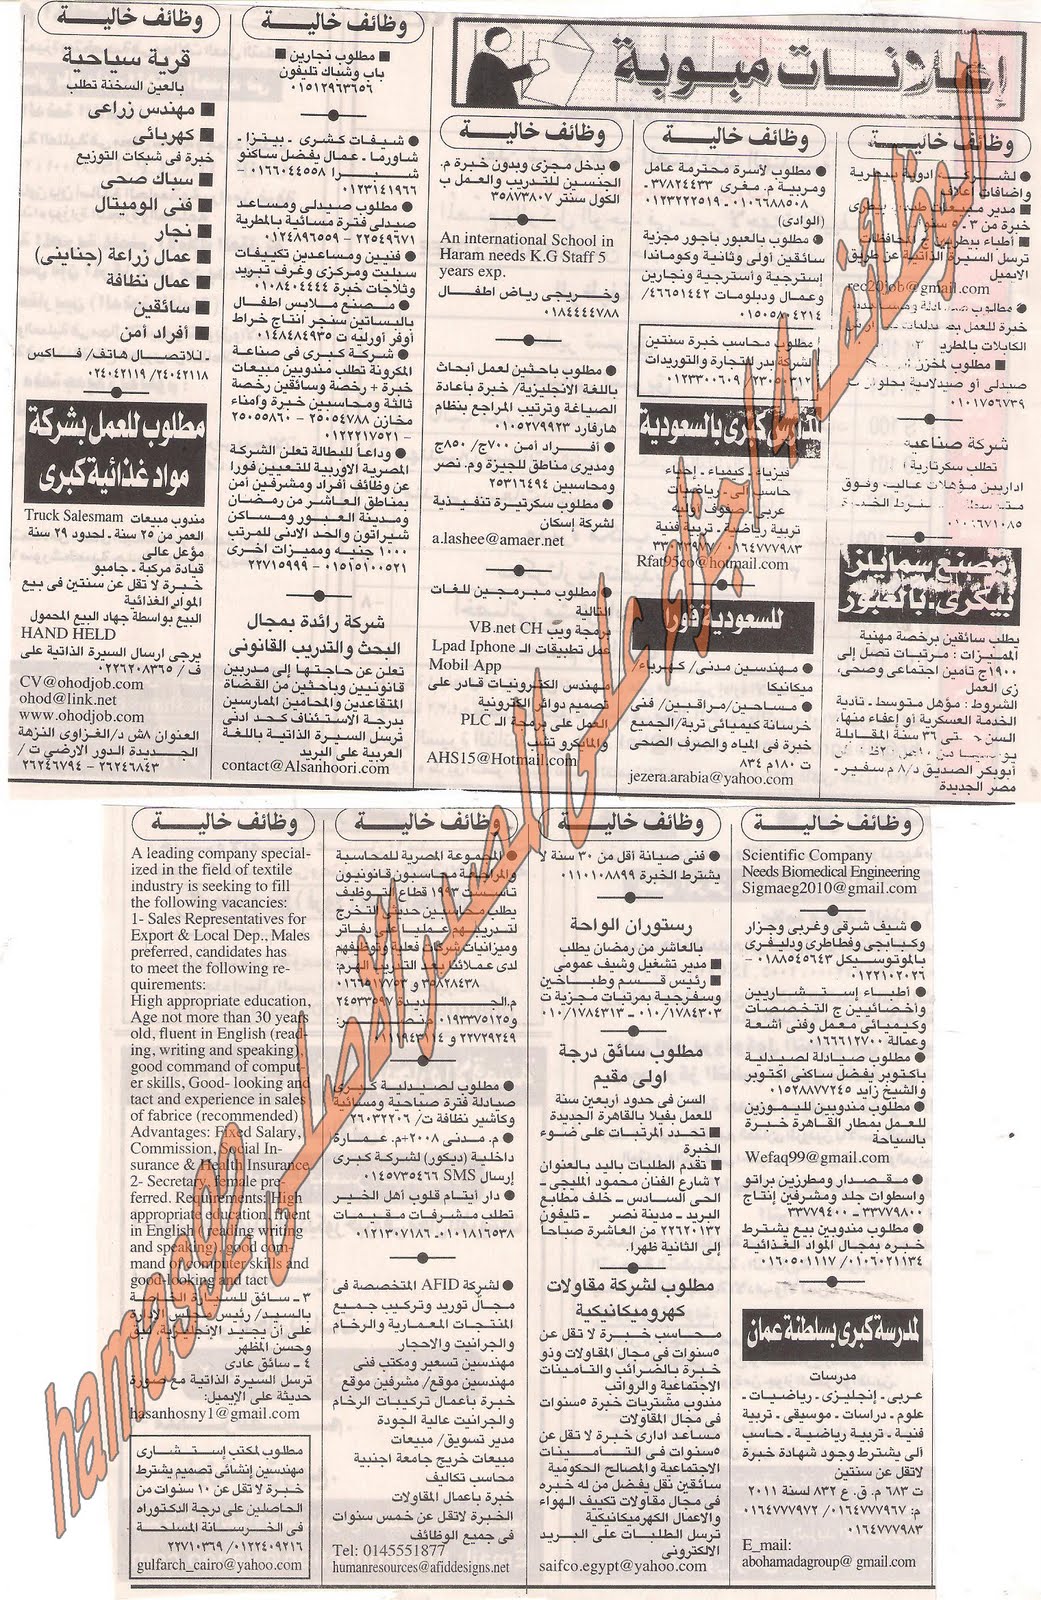 وظائف خاليه من اهرام الجمعه 5 اغسطس 2011 - الجزء الاول Picture+004